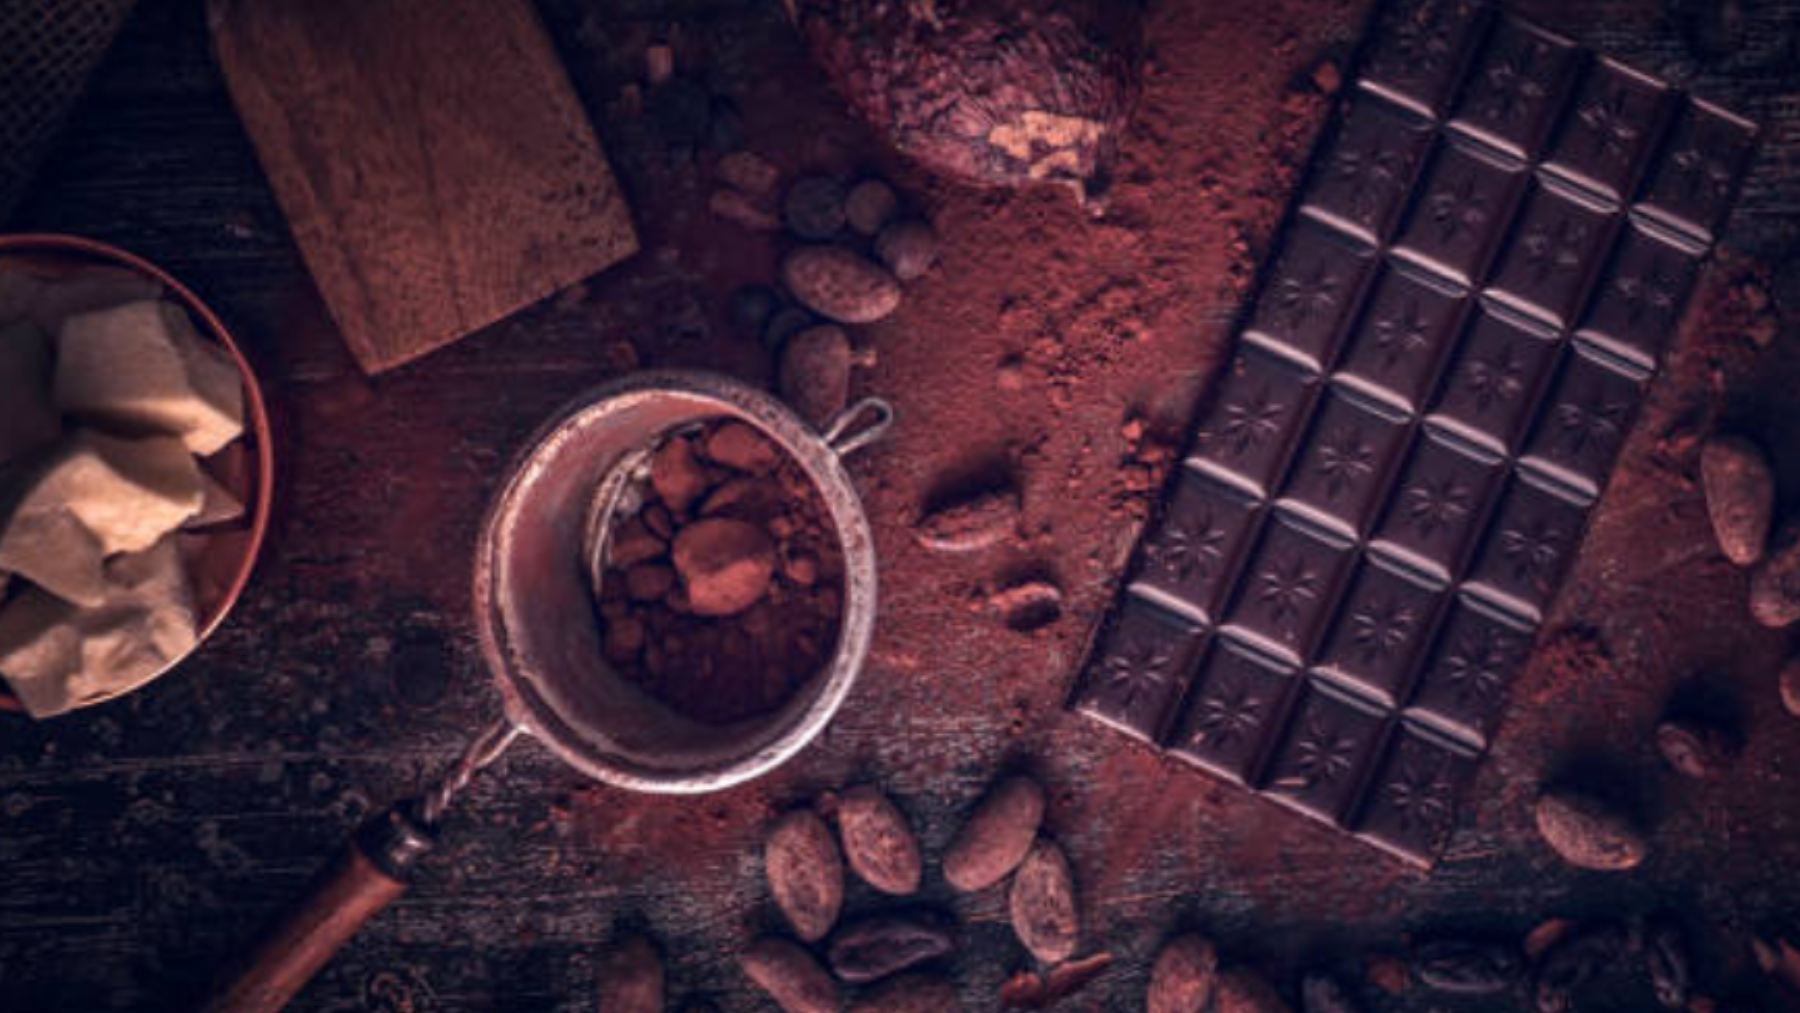 Alerta sanitaria: retiran 23 marcas de chocolate negro en los supermercados y piden no consumirlas